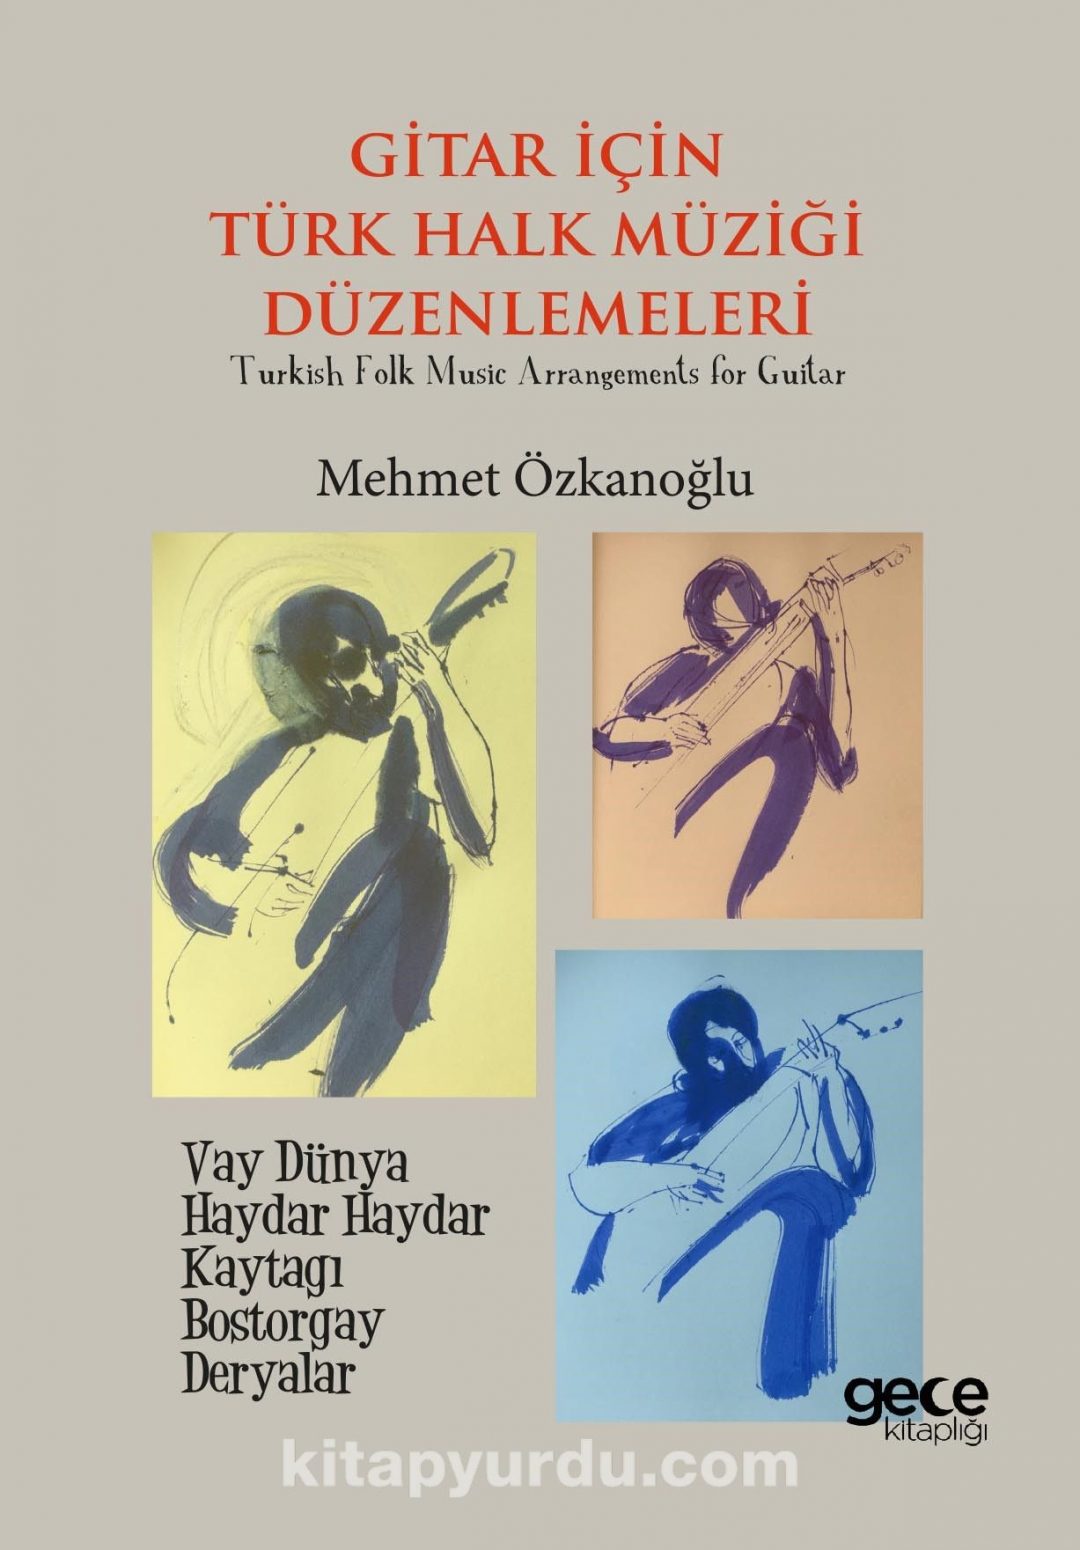 Gitar için Türk Müziği Düzenlemeleri & Turkish Folk Music Arrangements for Guitar